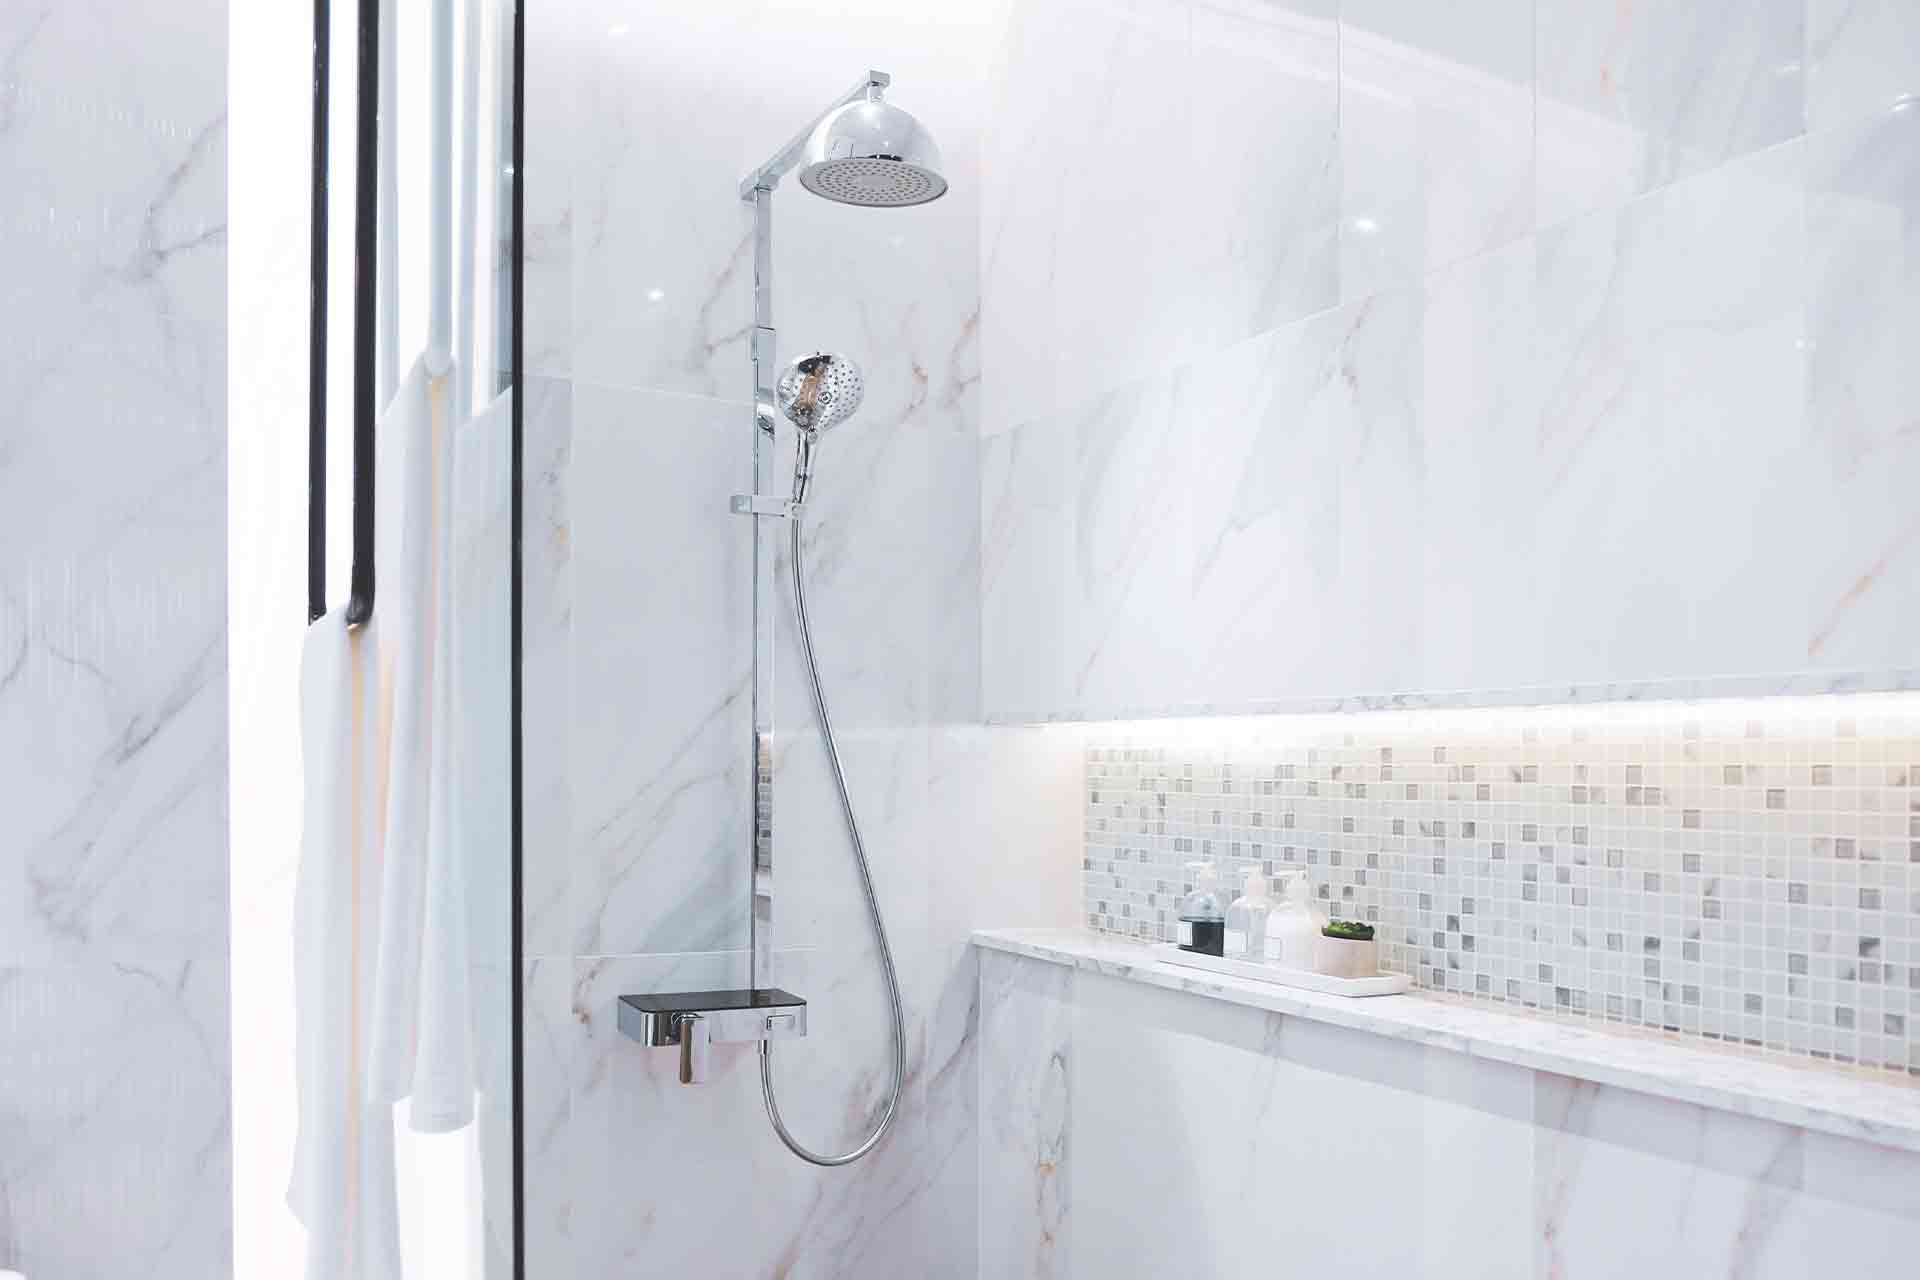 https://www.checkatrade.com/blog/wp-content/uploads/2020/11/Recessed-shower-shelf.jpg